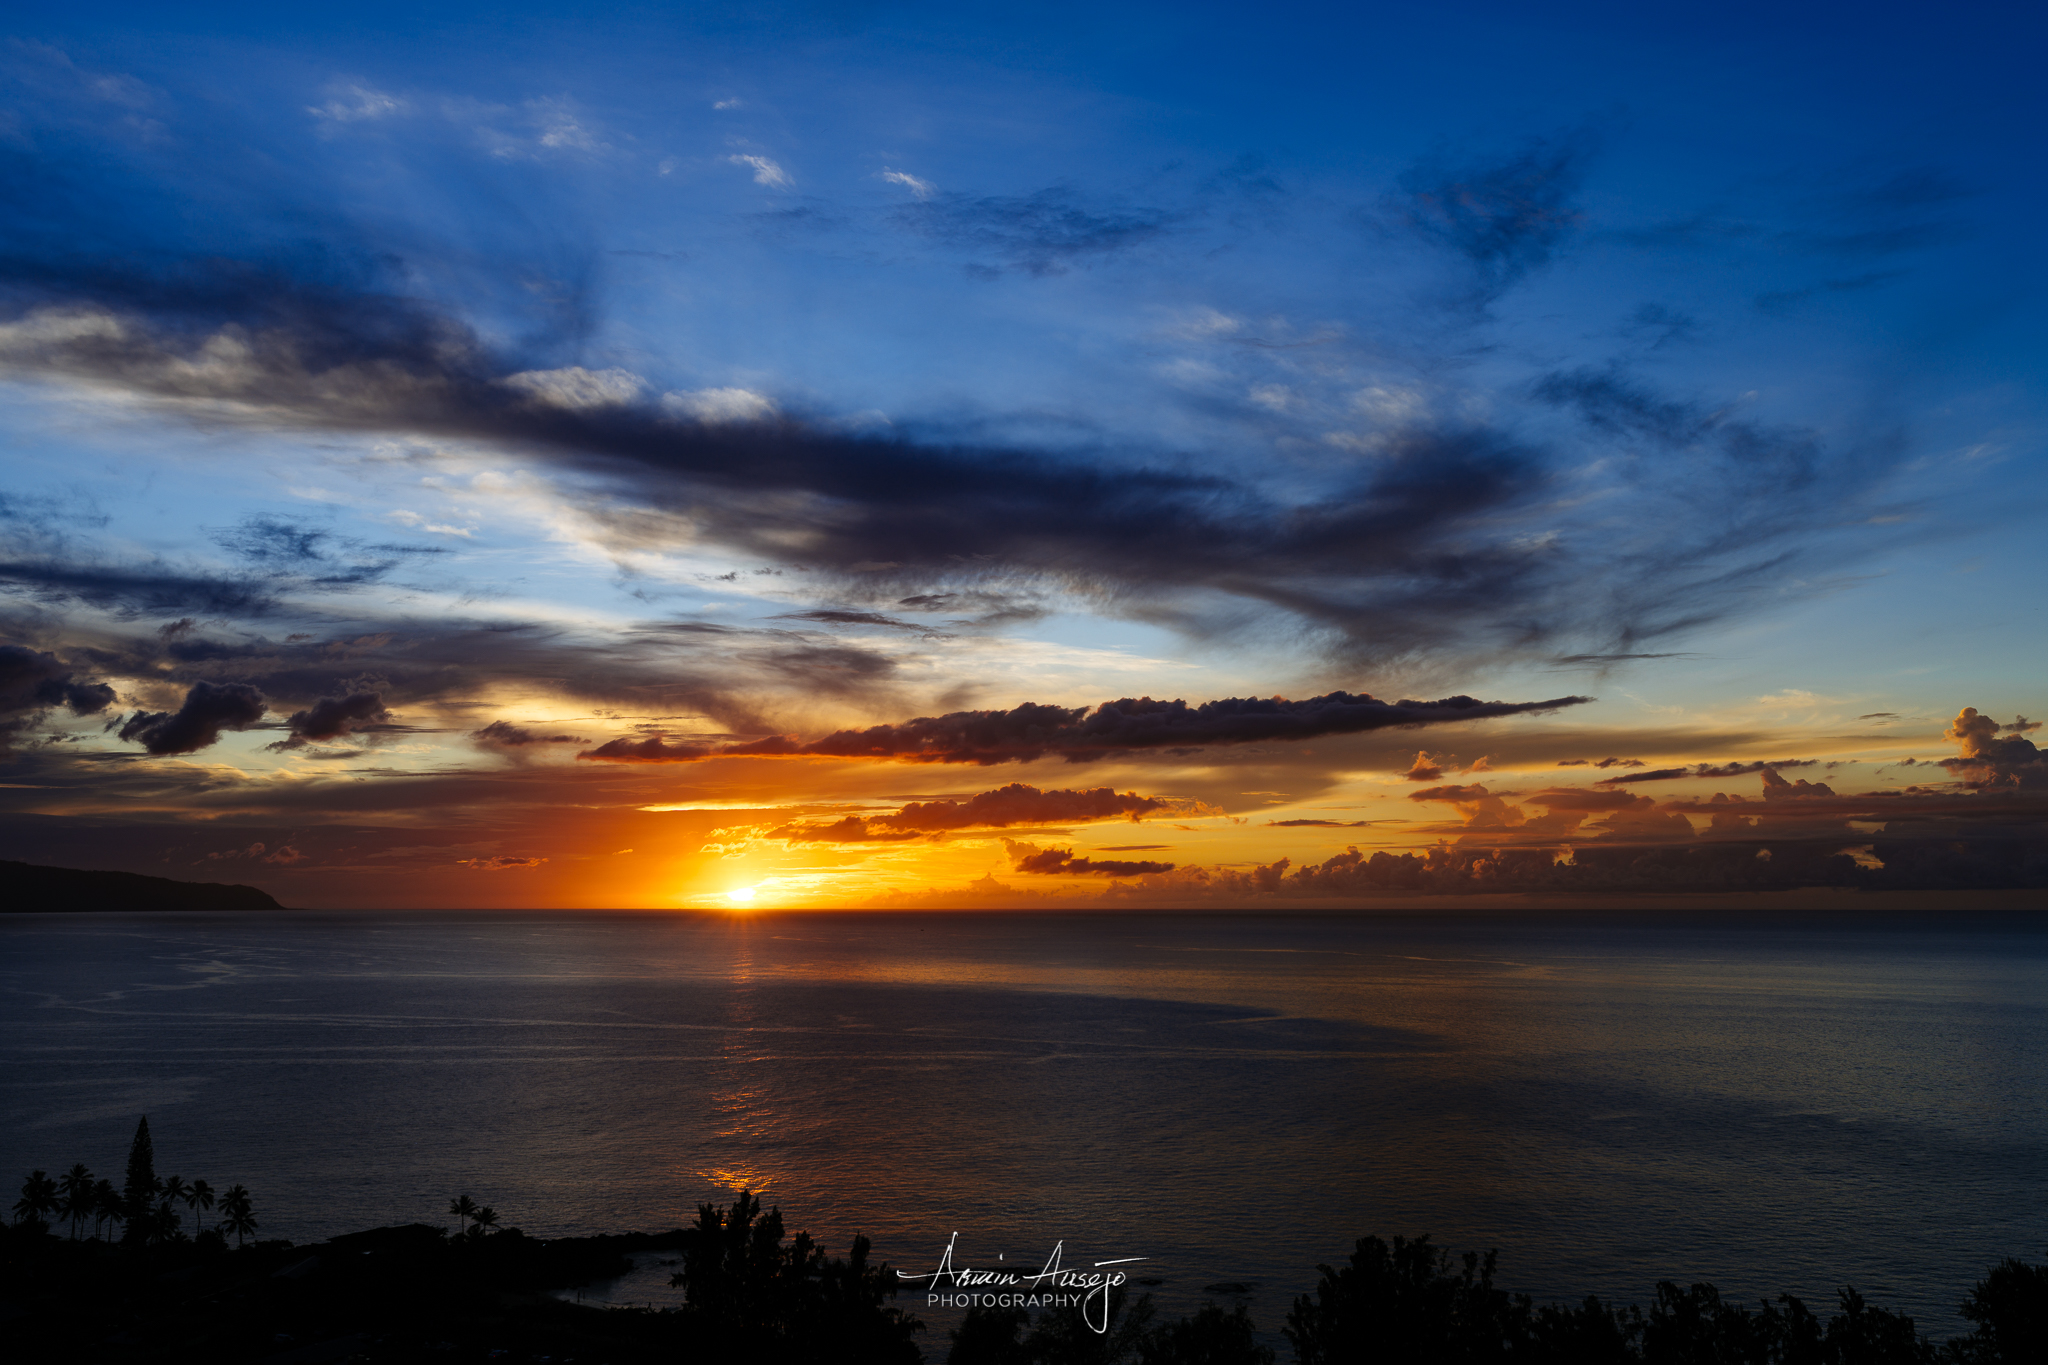 Sunset over Waimea Bay with the Nikon Z7, North Shore Oahu